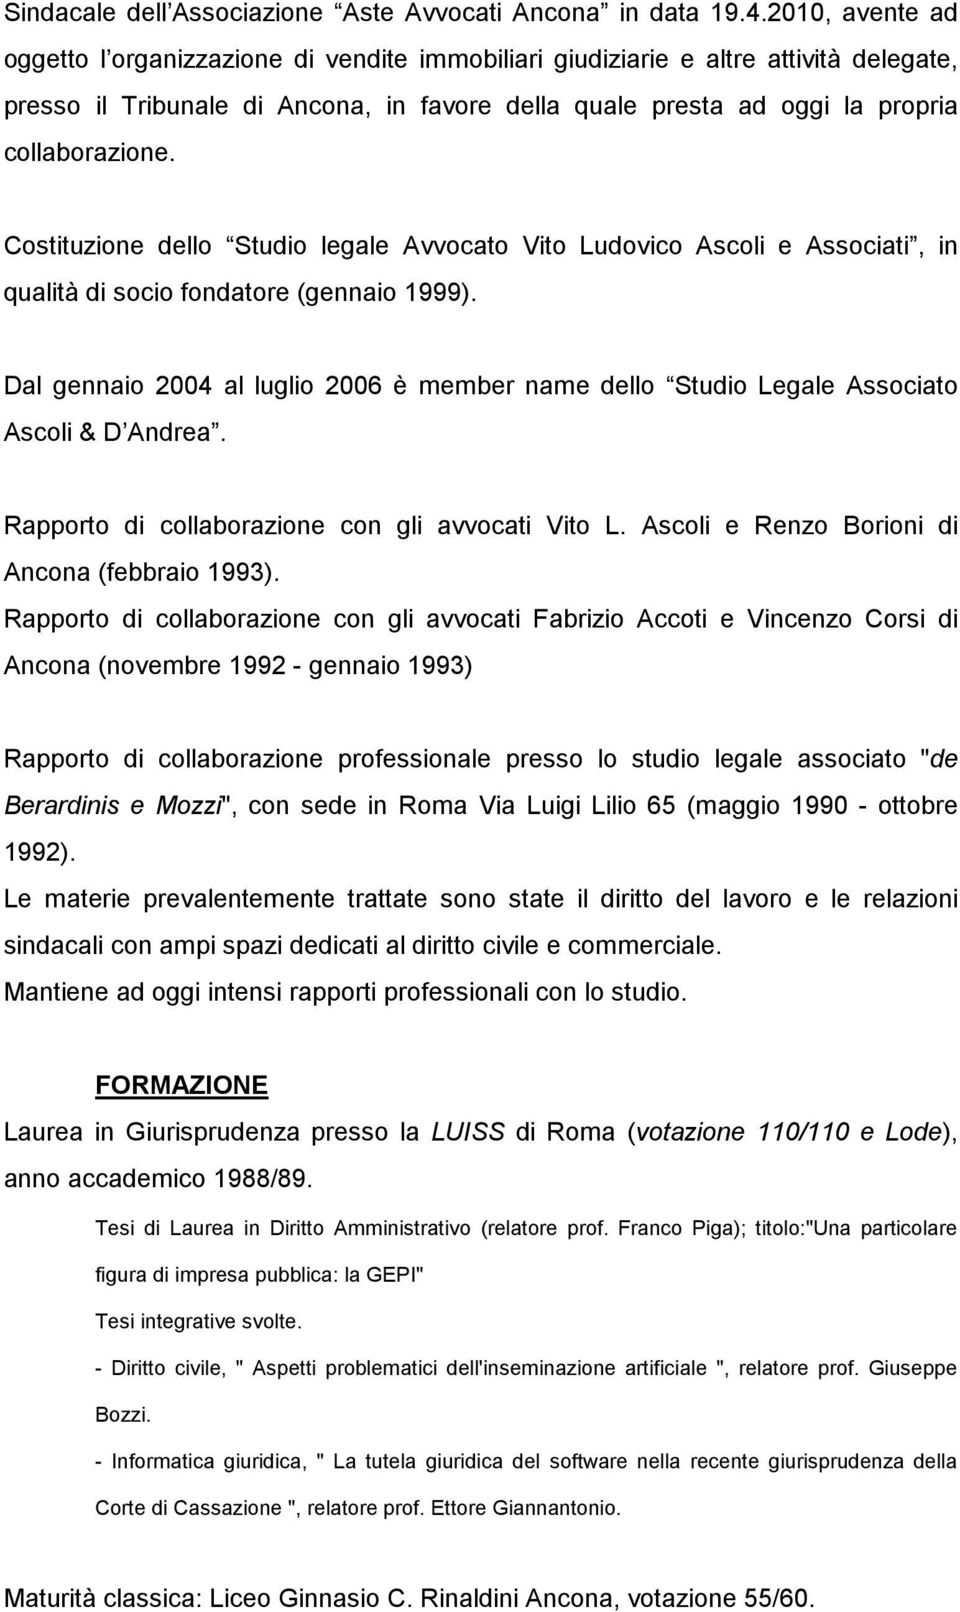 Costituzione dello Studio legale Avvocato Vito Ludovico Ascoli e Associati, in qualità di socio fondatore (gennaio 1999).